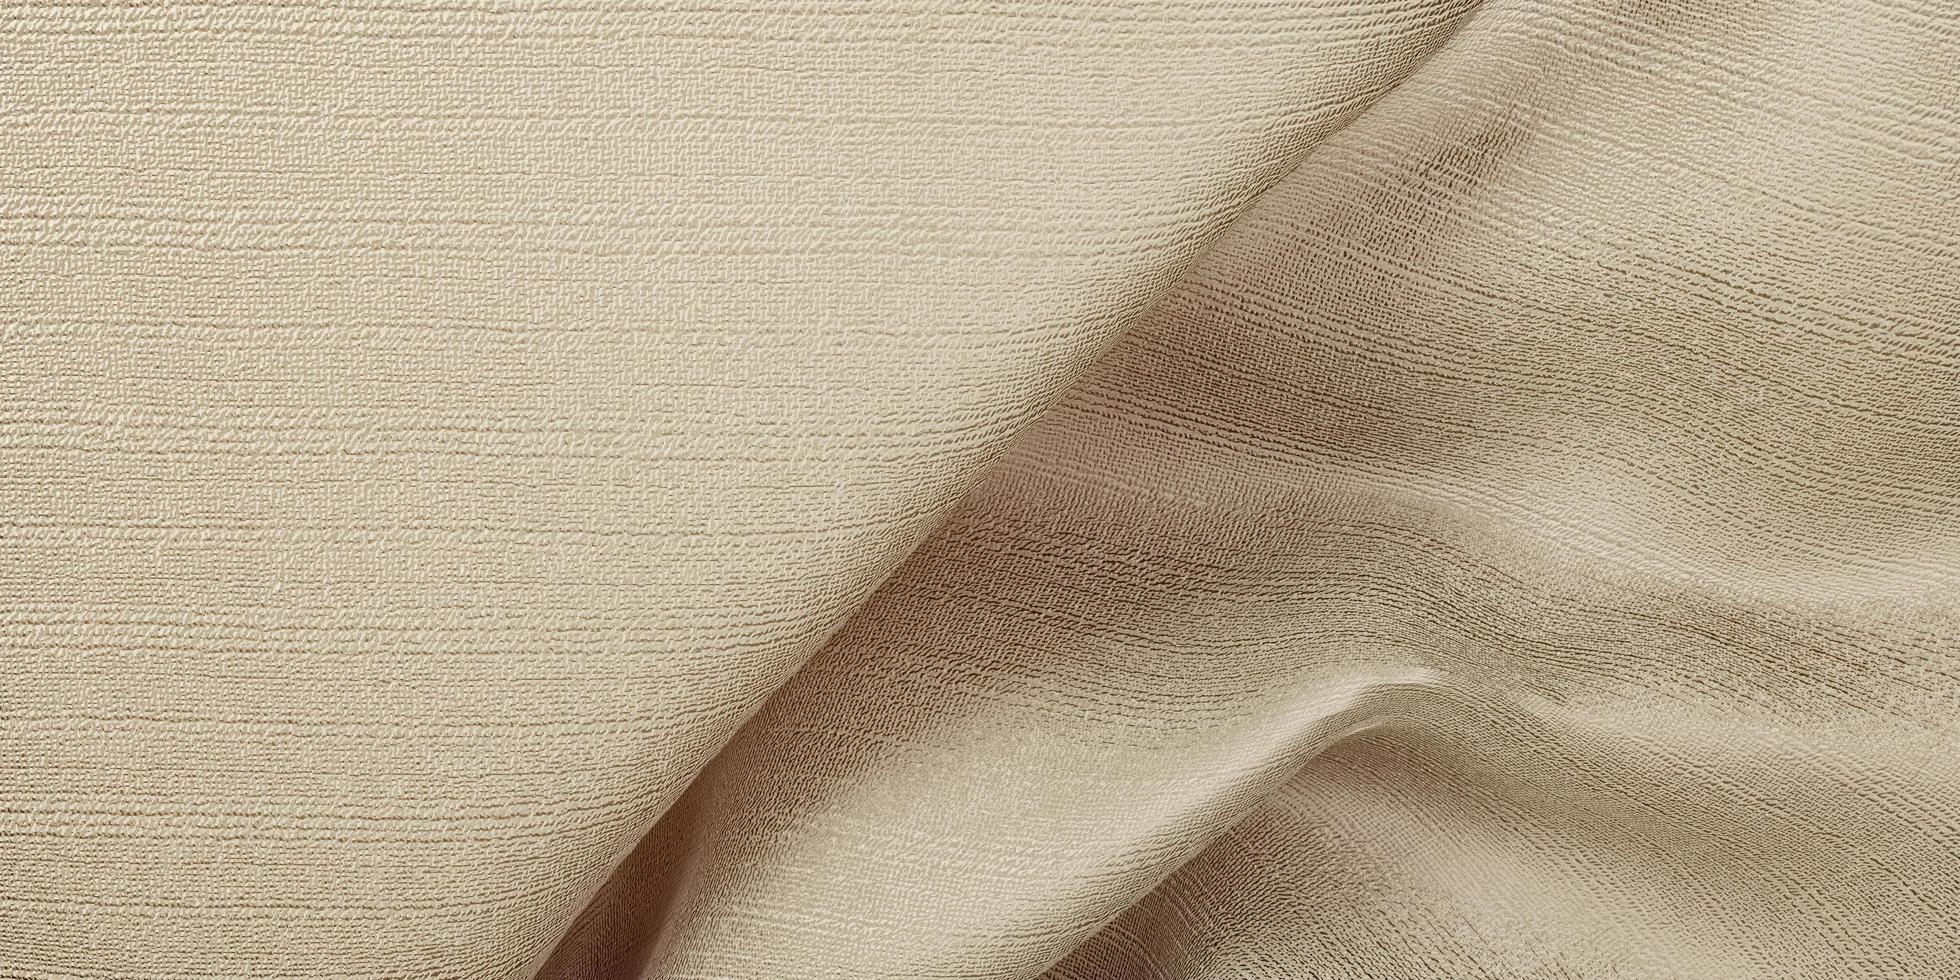 zijde textuur golf gordijn organza stof licht beige 3d illustratie foto